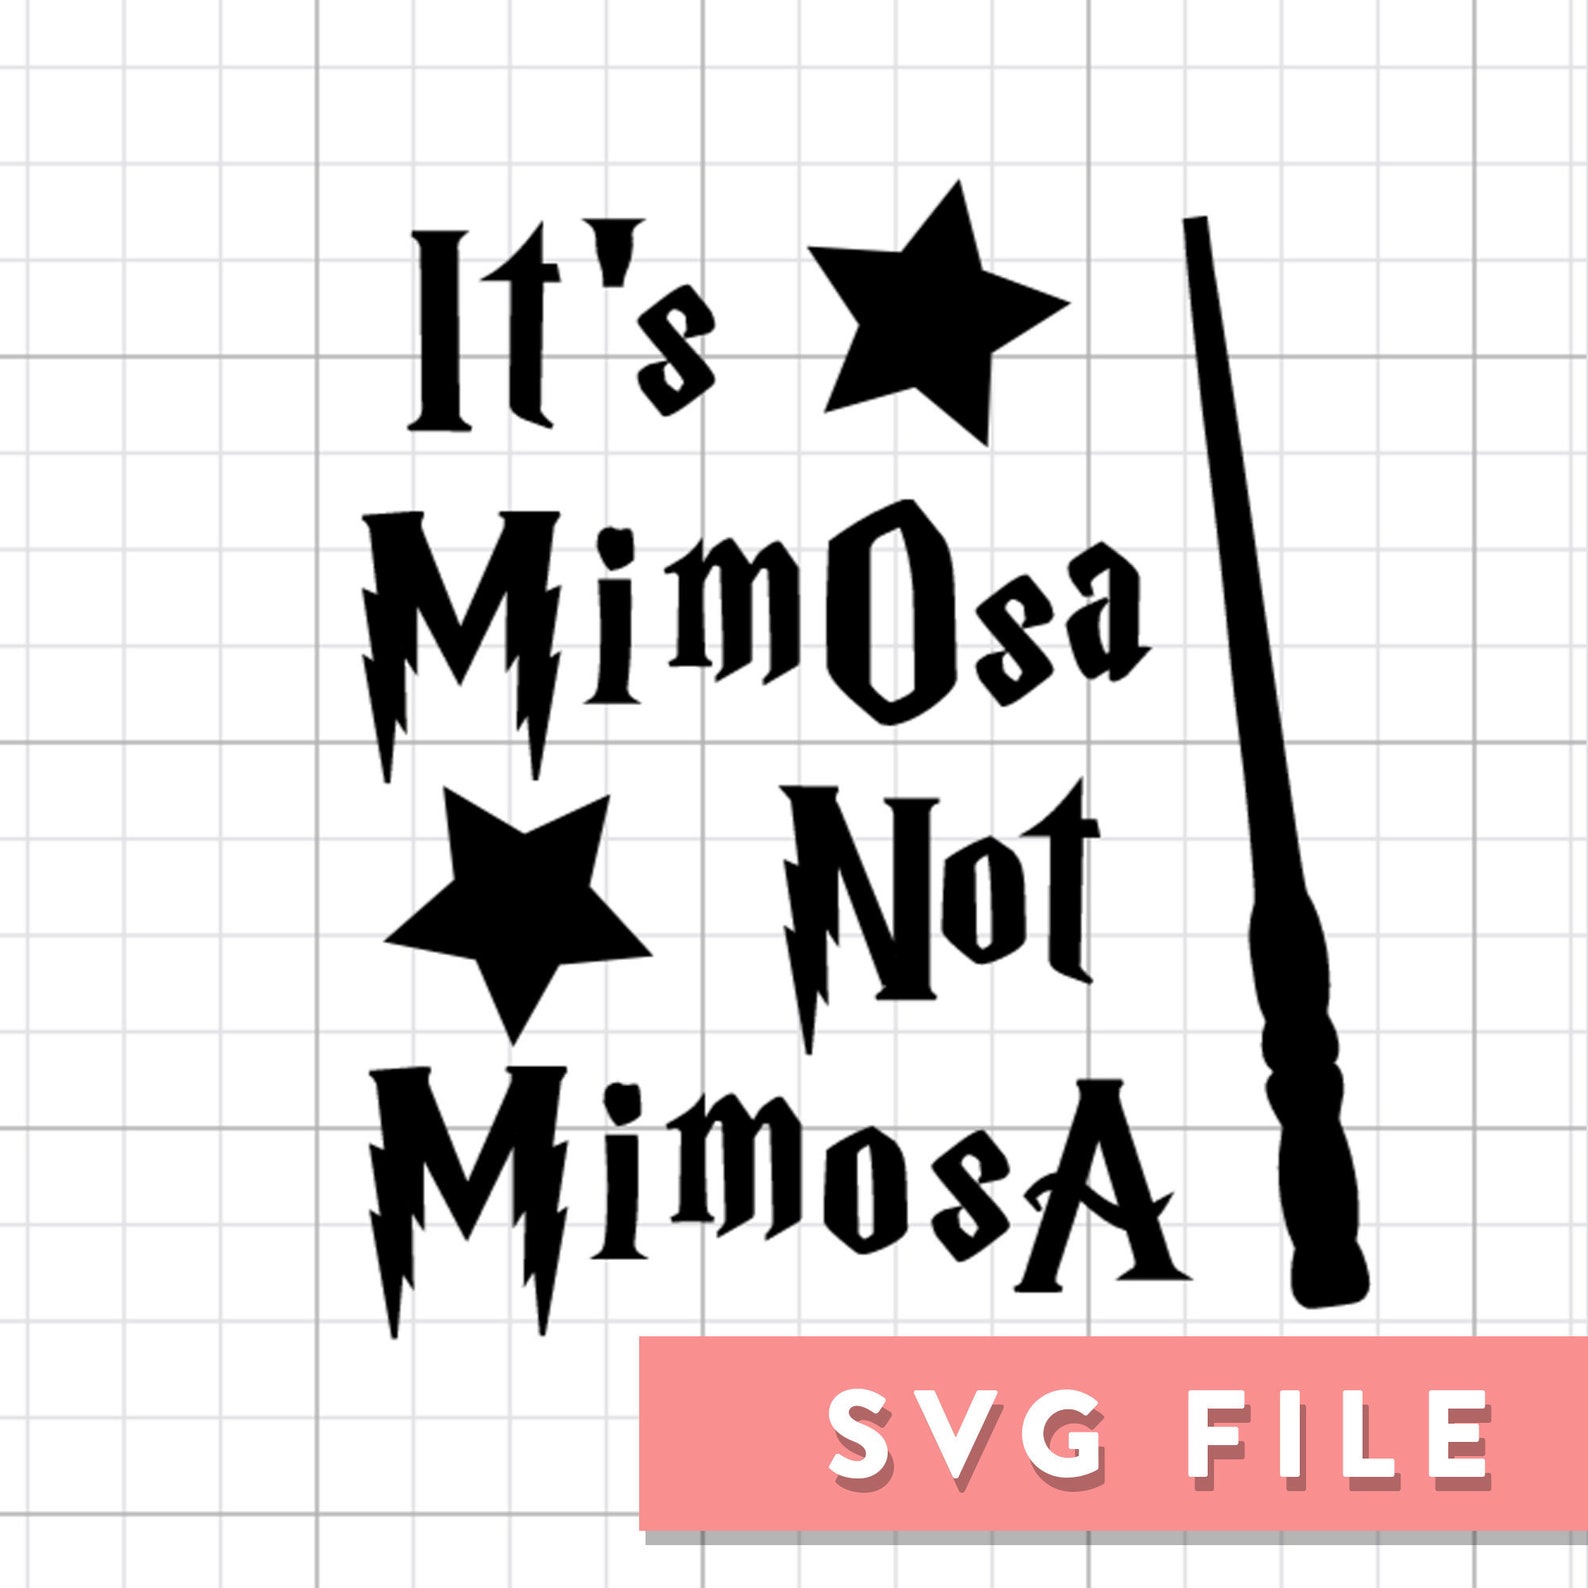 SVG File: Harry Potter Mimosa Wine Glass | Etsy